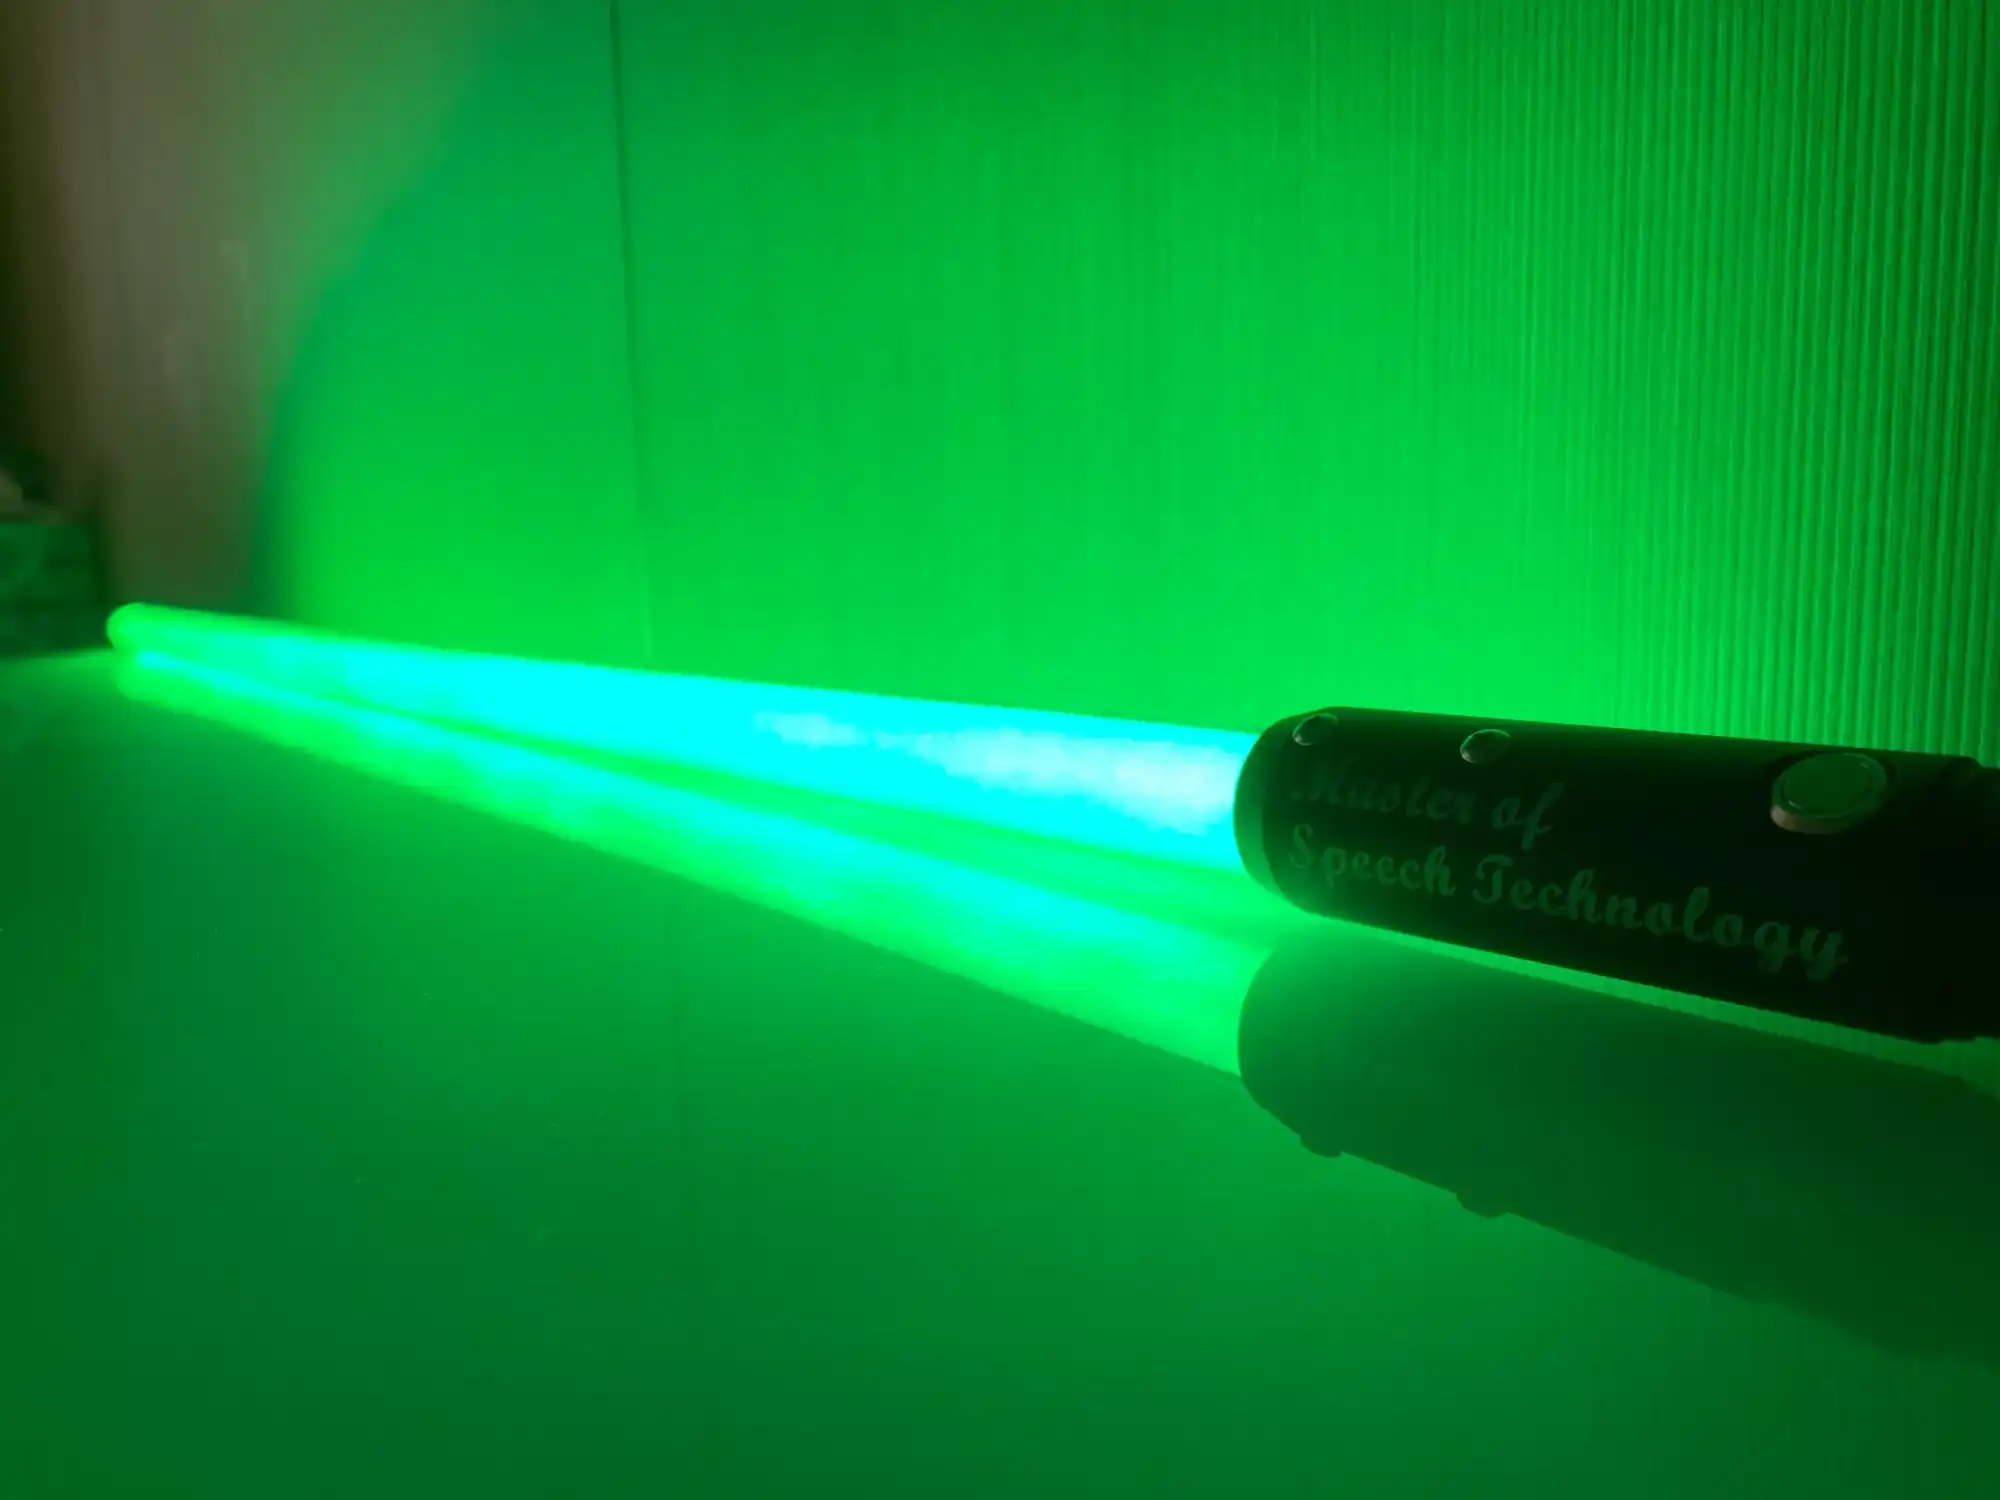 這是「尤達大師」的「雷射寶劍」的相片，上面刻的「Master of Speech Technology」清晰可見，按下按鈕後其發出之綠光甚為明亮。